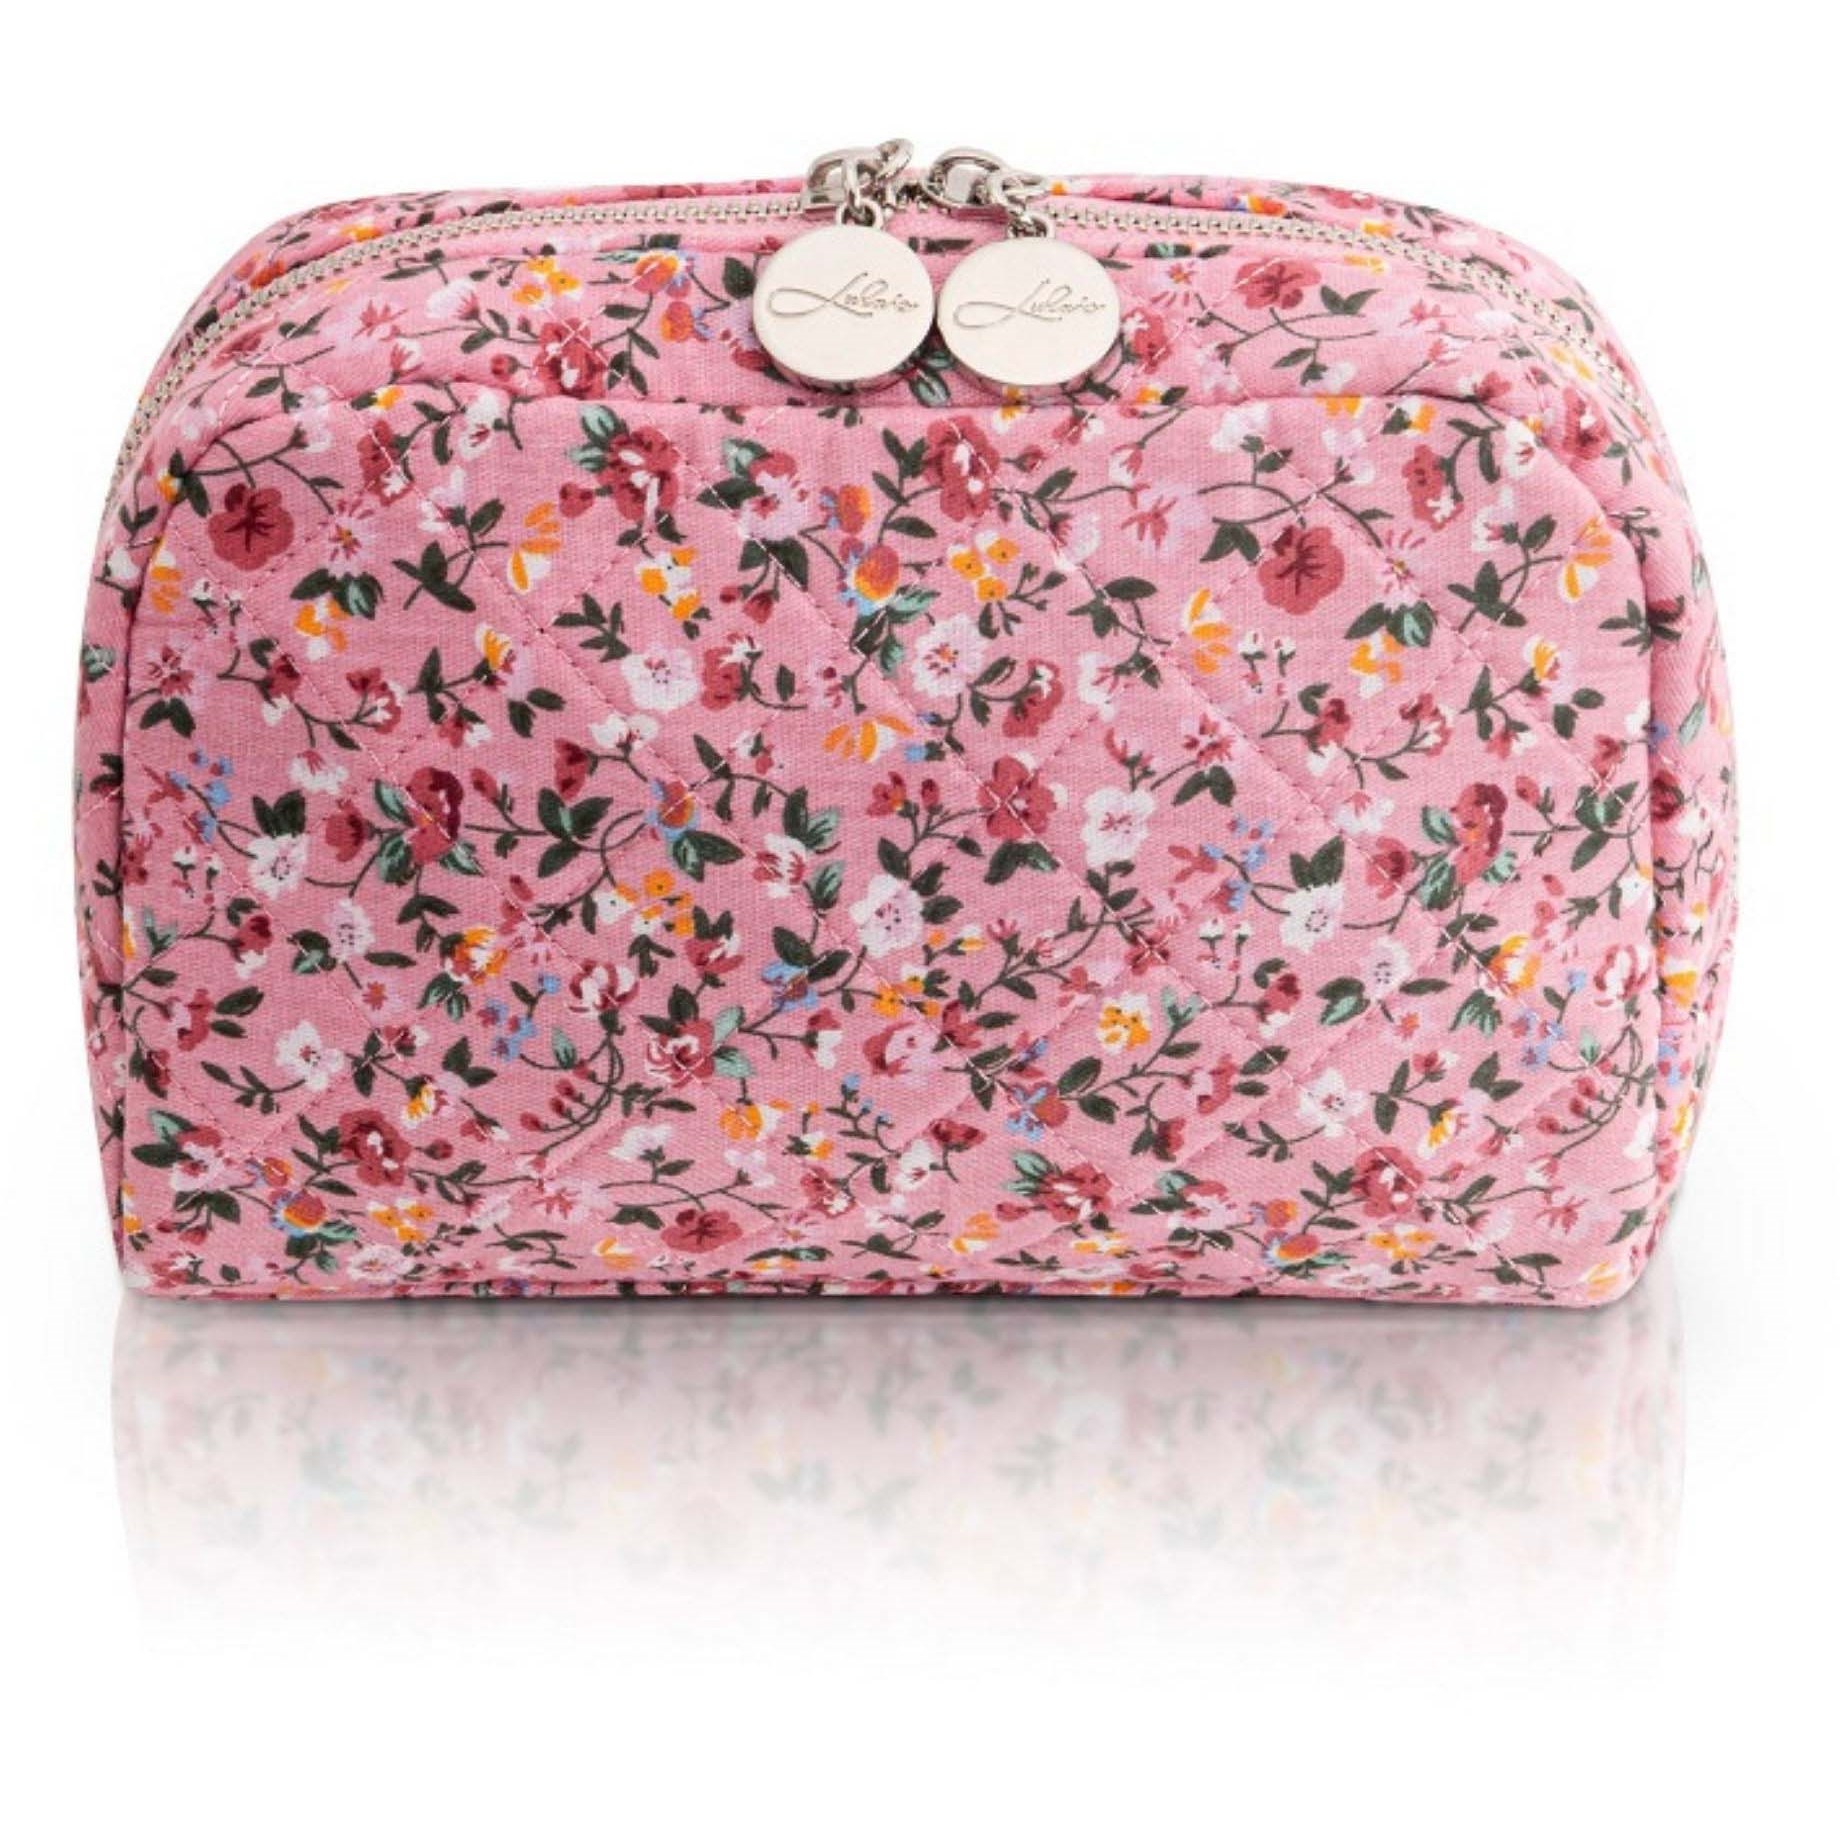 Bilde av Lulu's Accessories Cosmetic Bag Floral Rose